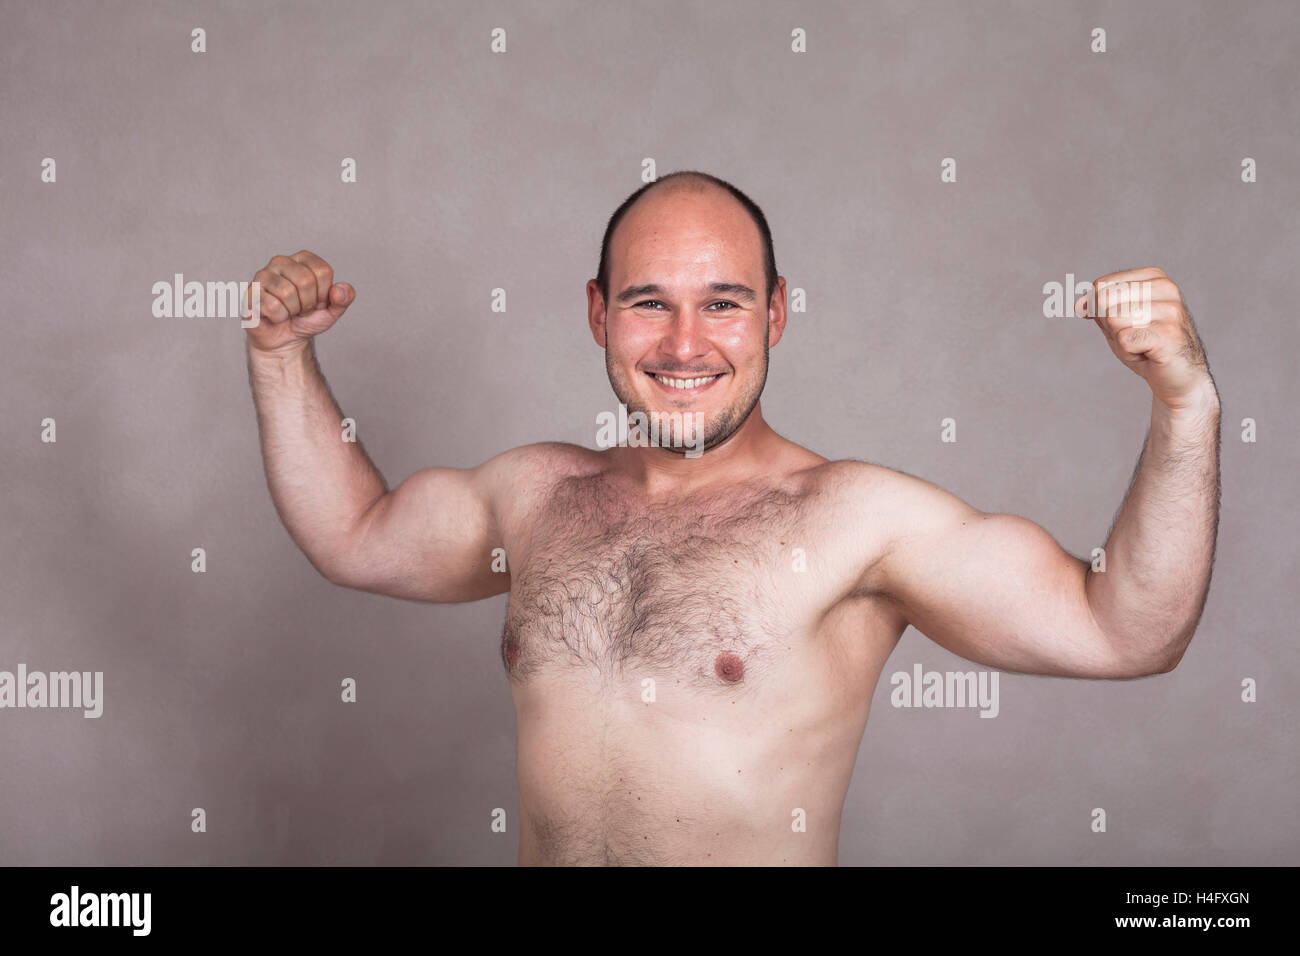 Ritratto di felice shirtless uomo in posa e mostra le sue forti braccia e corpo peloso. Foto Stock